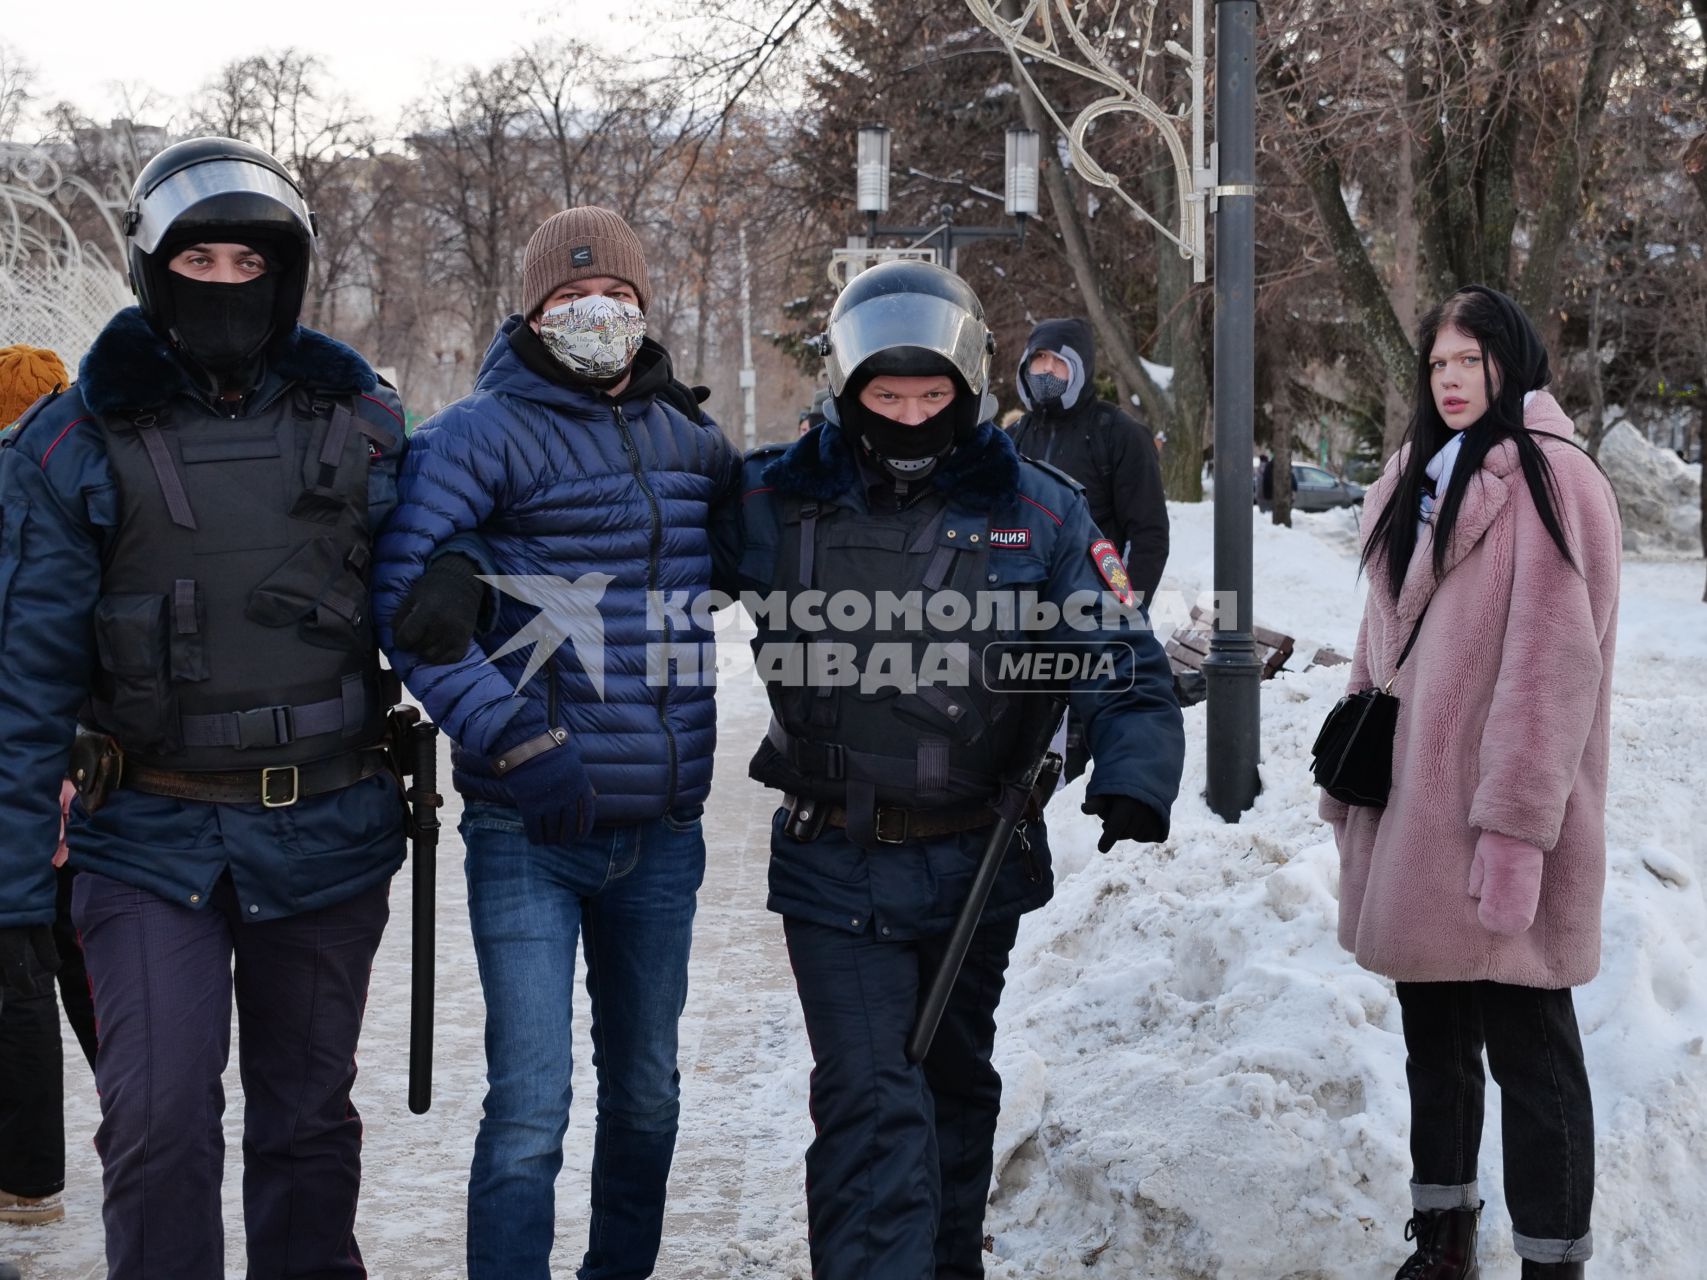 Самара. Сотрудники правоохранительных органов задерживают участника несанкционированной акции протеста в поддержку Алексея Навального.